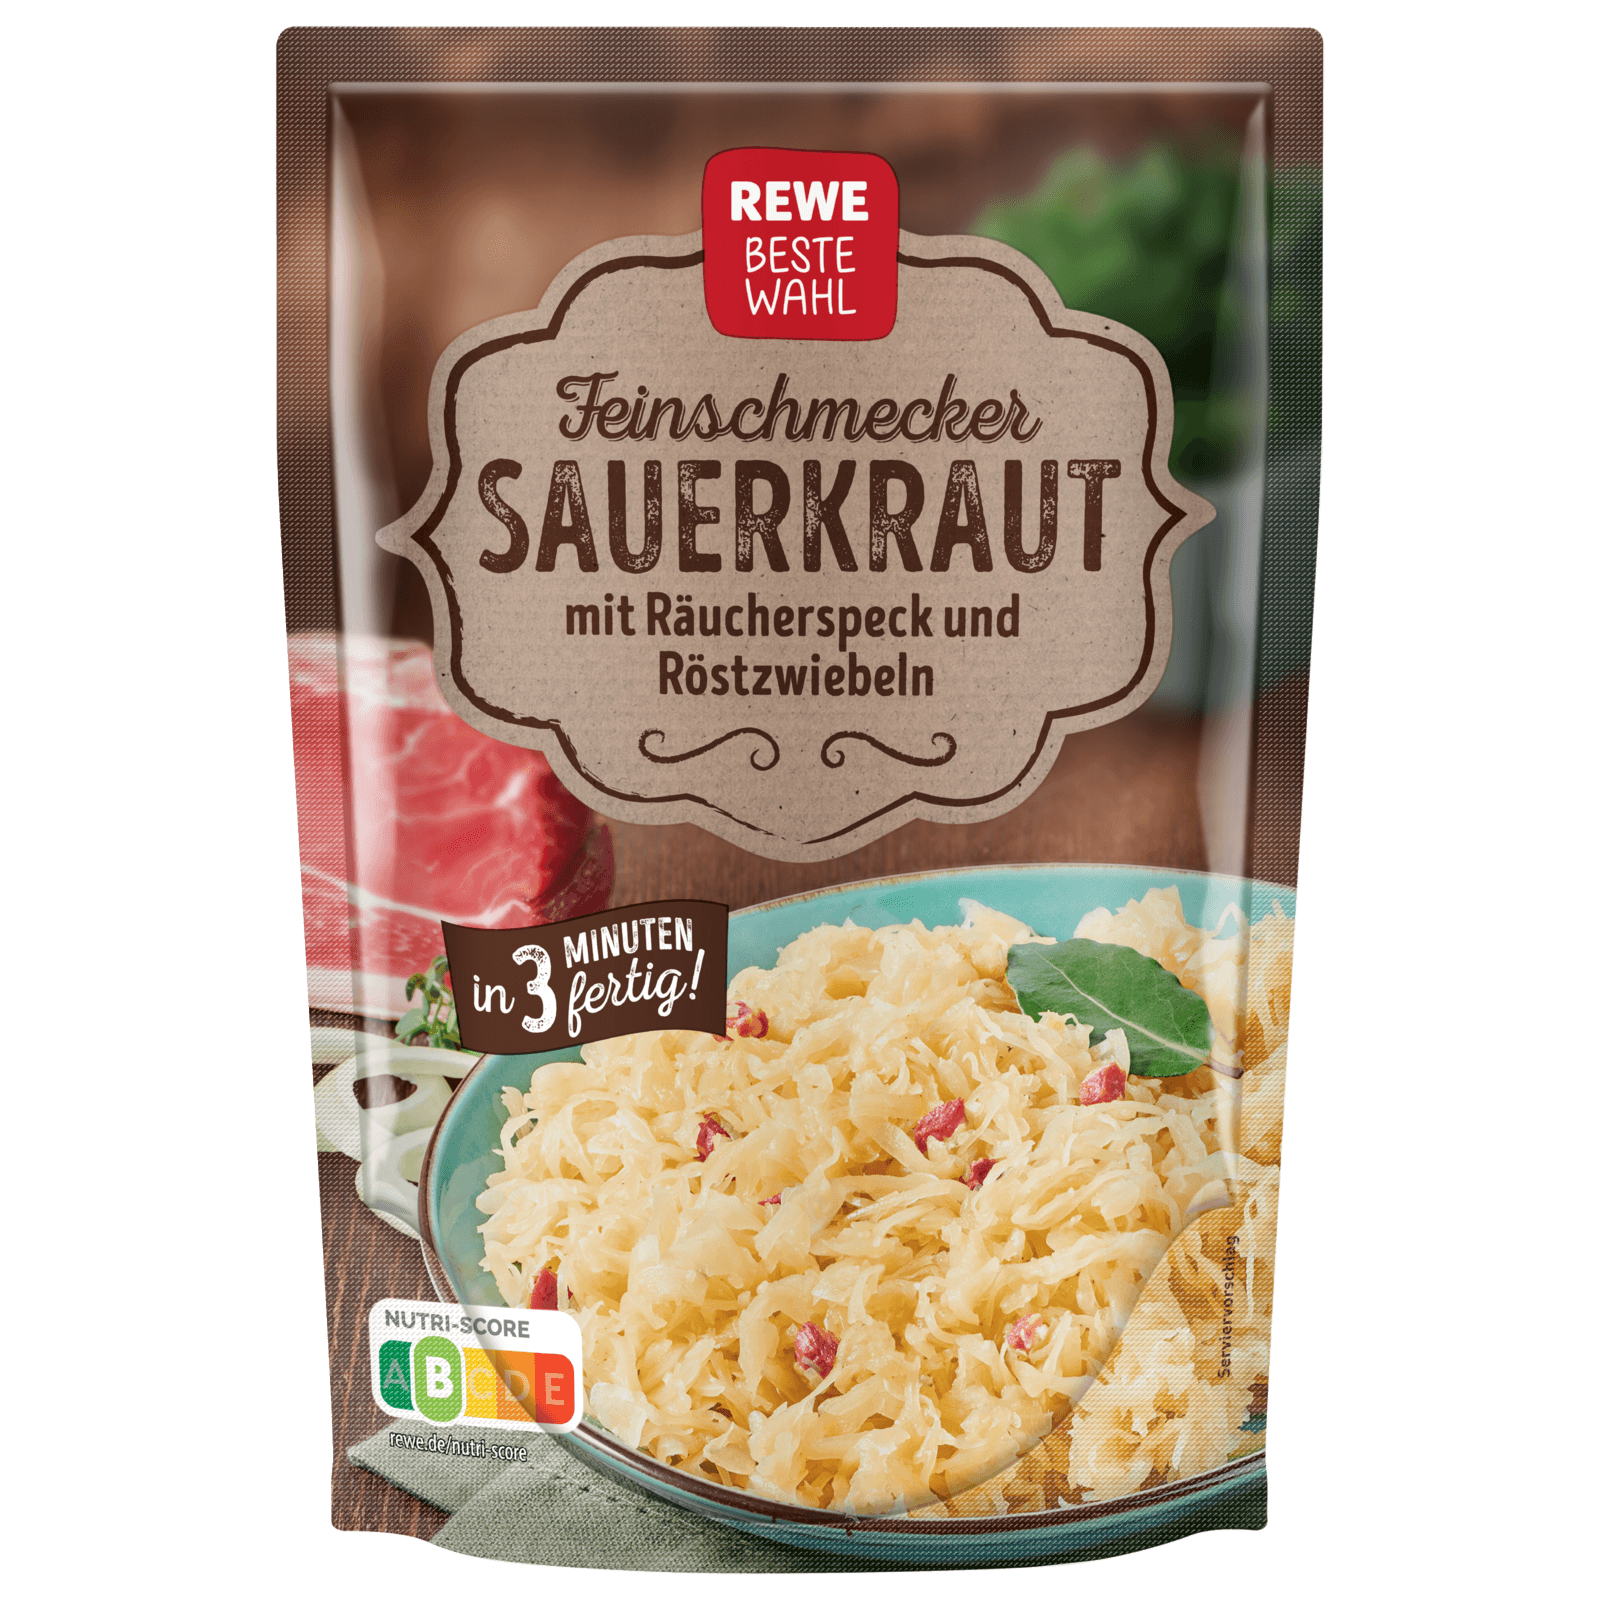 REWE Beste Wahl Feinschmecker-Sauerkraut 400g  für 1.39 EUR